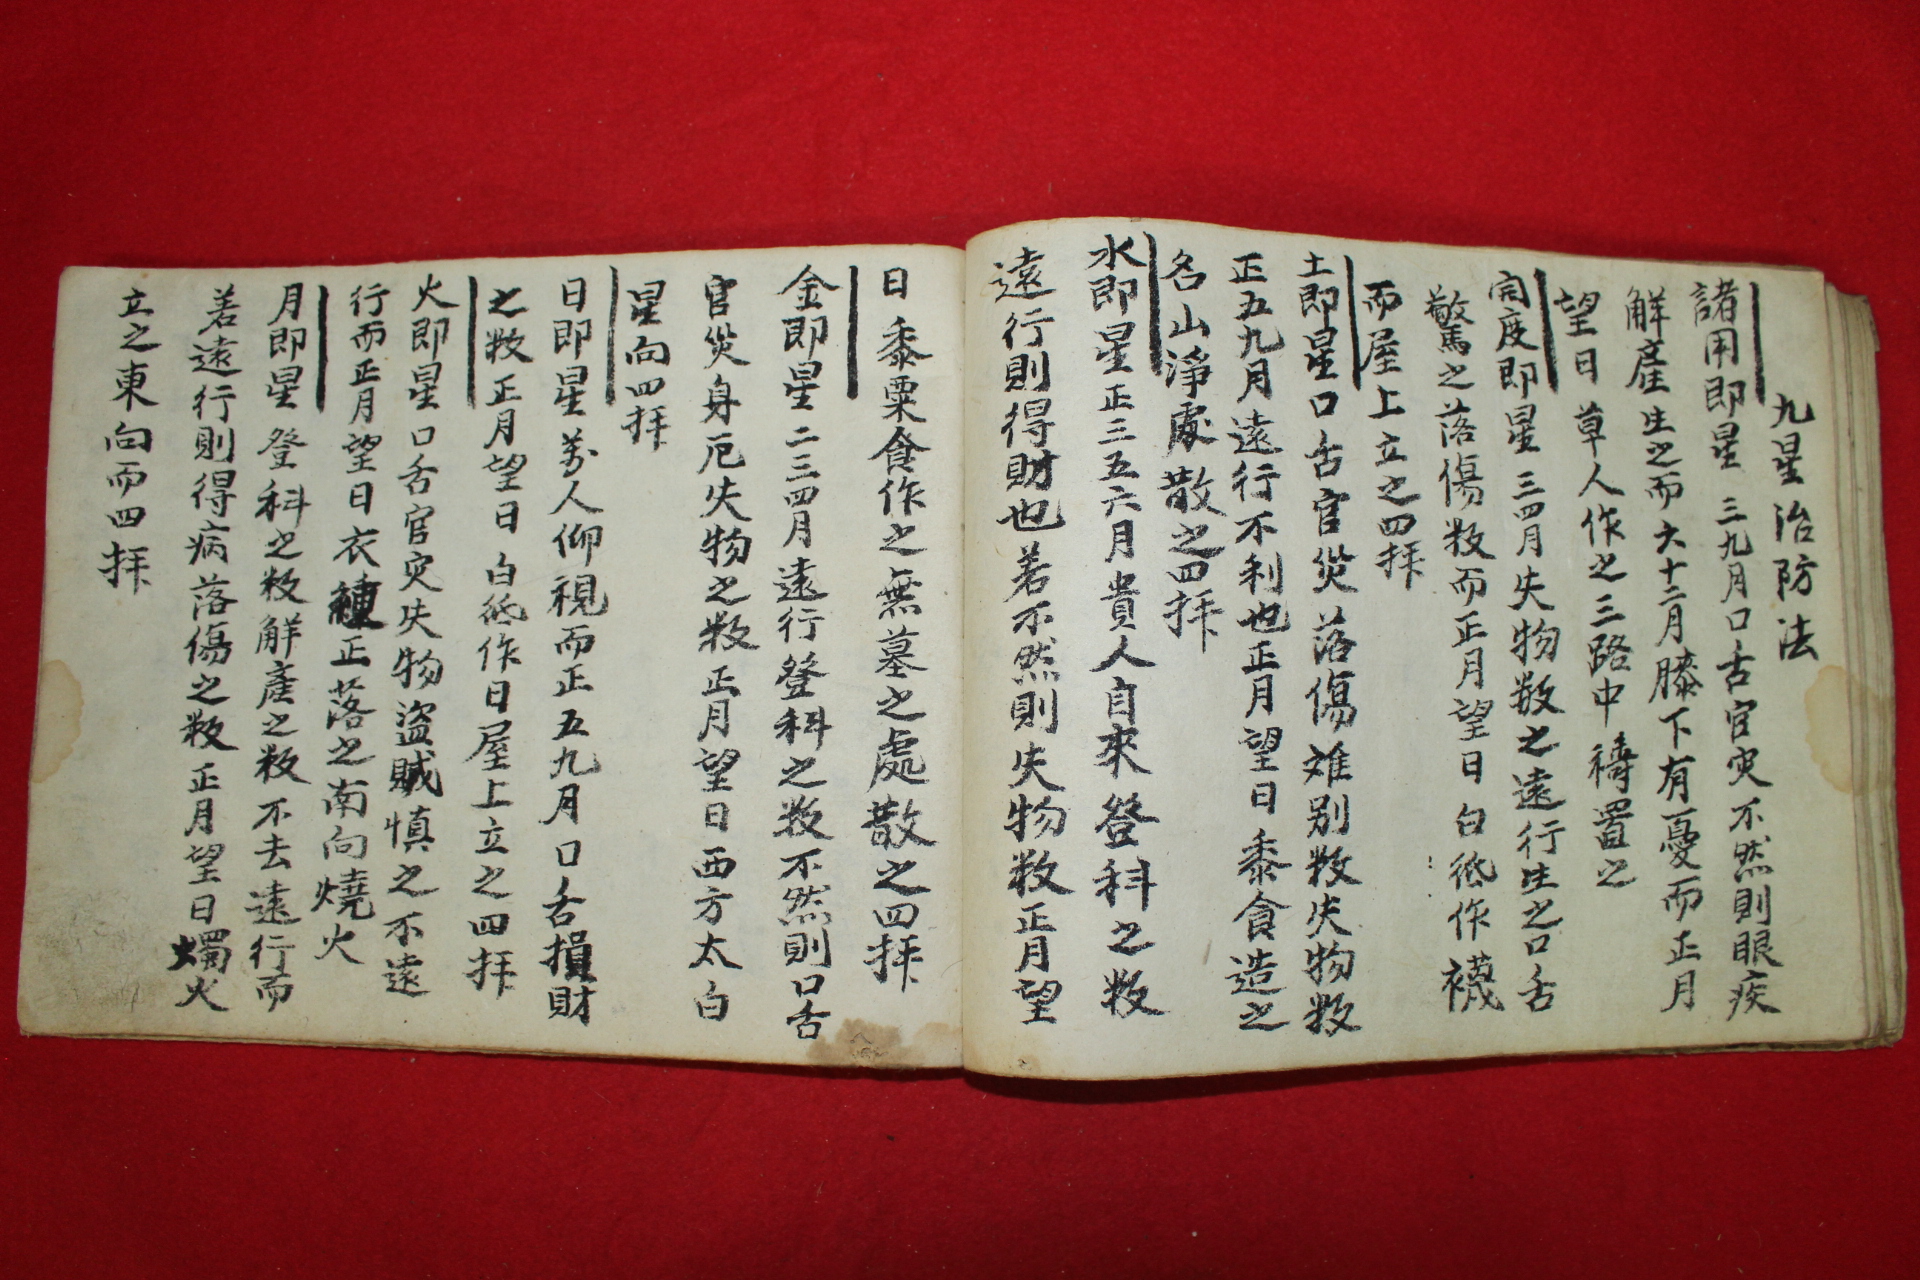 조선시대 필사본 사성도(四星圖)